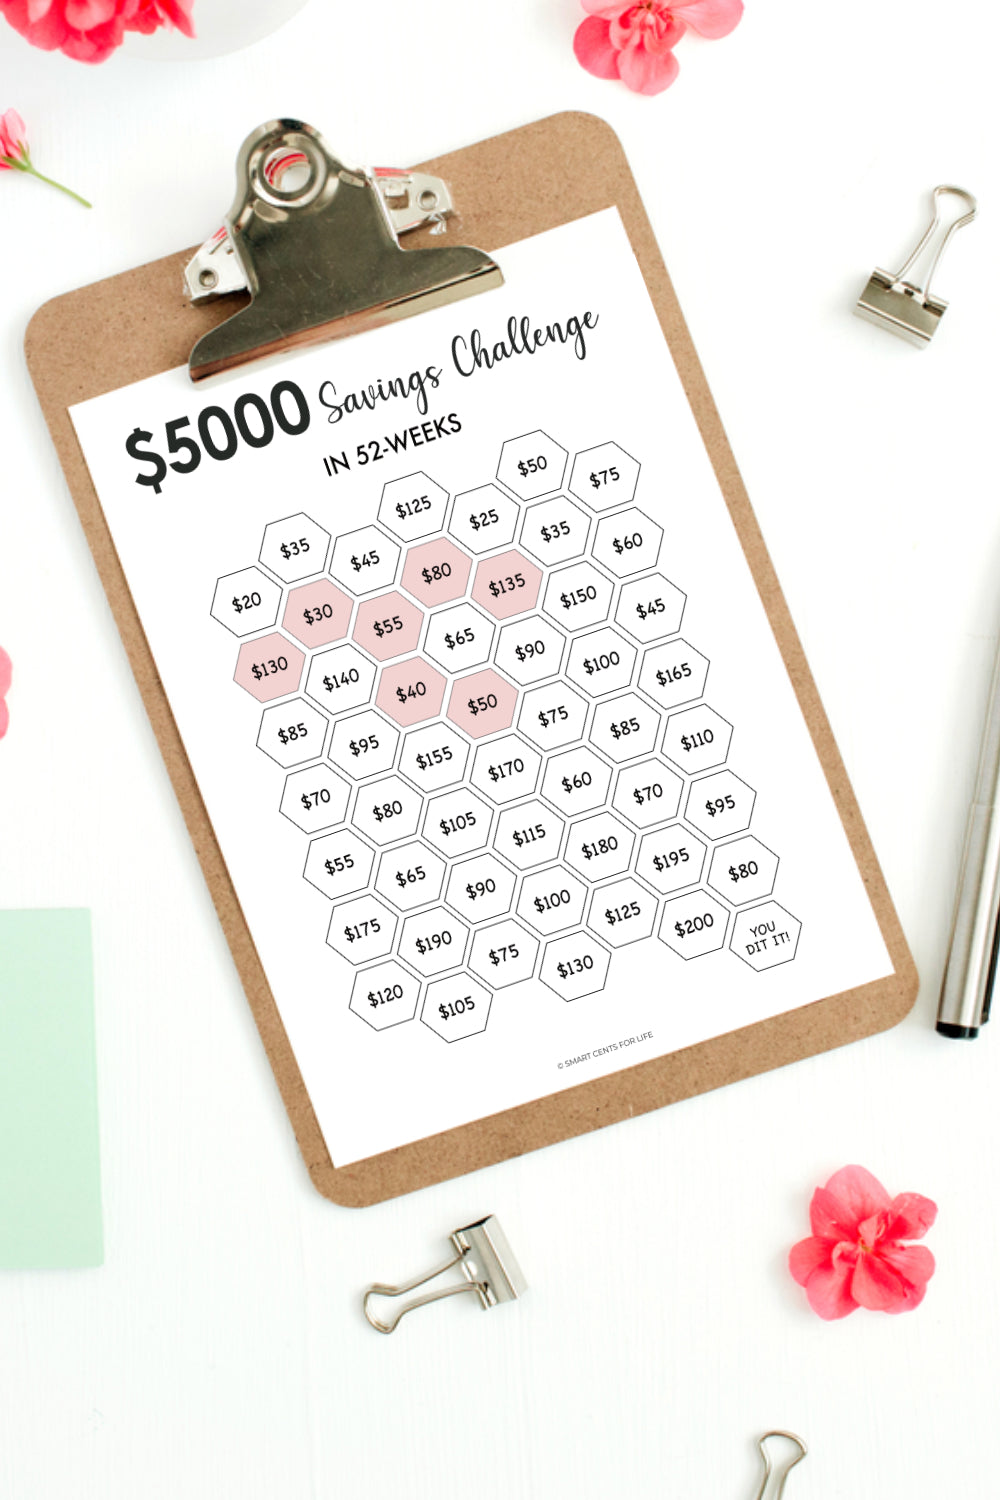 $5000 Savings Challenge Printable